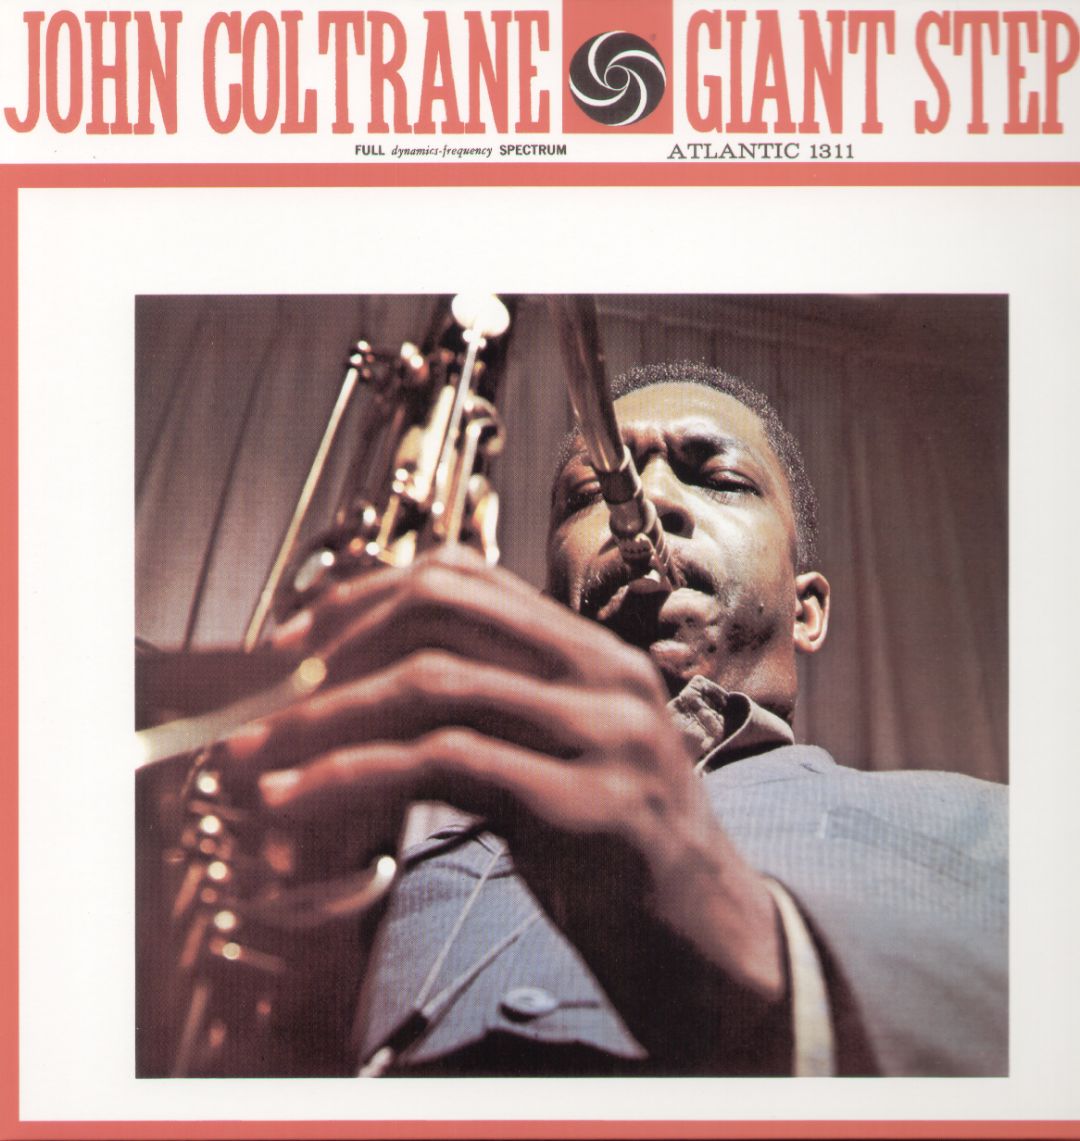 John Coltrane - Giant Steps (stereo)